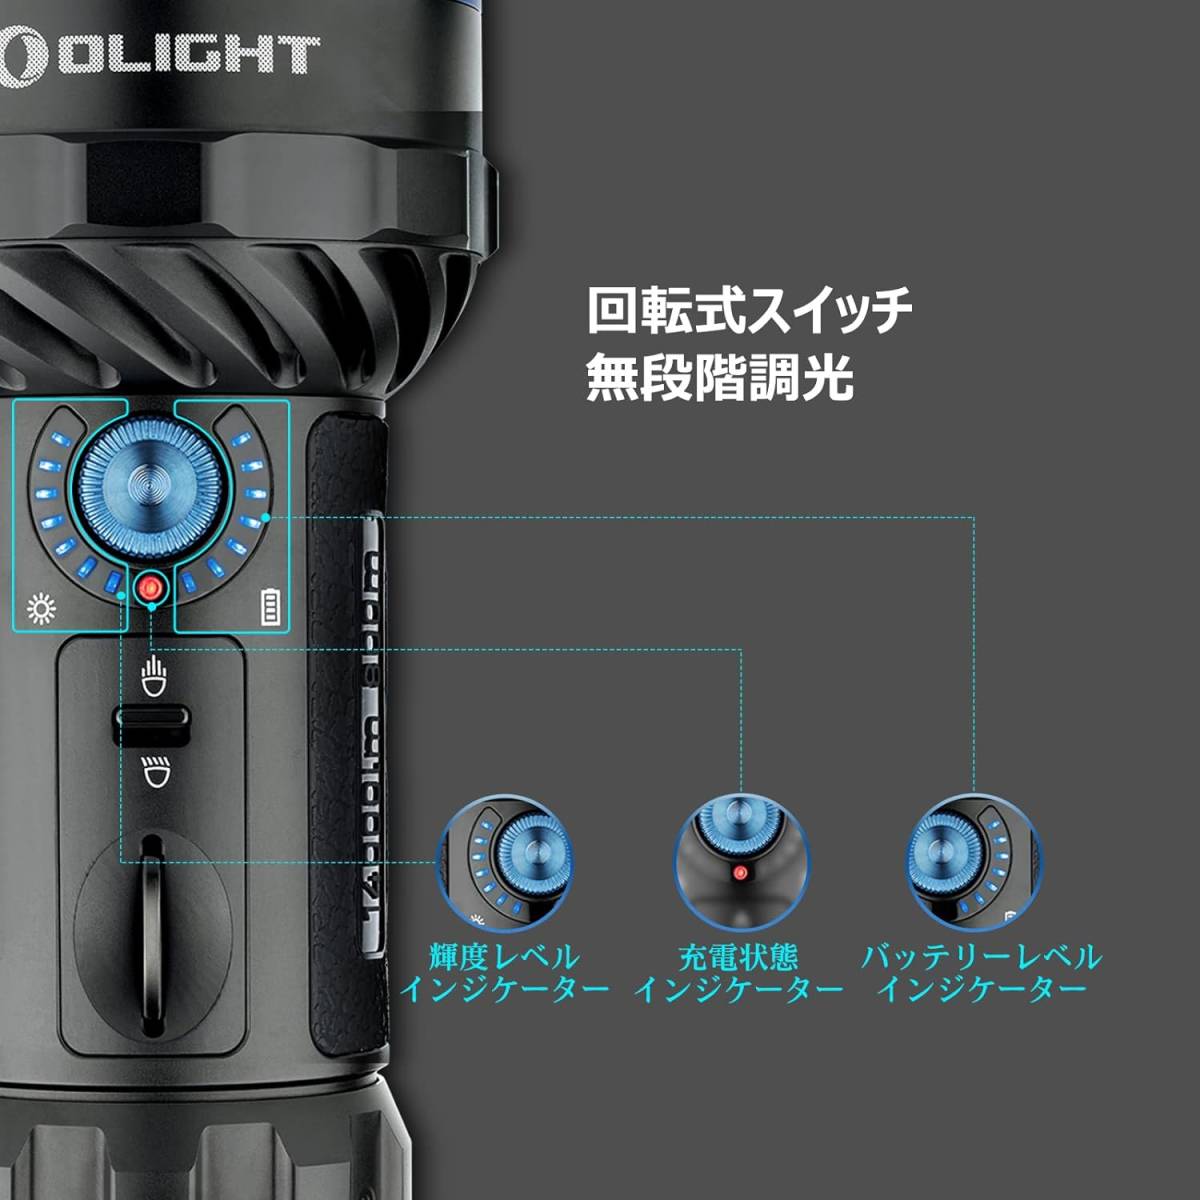 Black OLIGHT(オーライト) Marauder 2 懐中電灯 ledフラッシュライト 強力 最強 ハンディライト 140_画像4